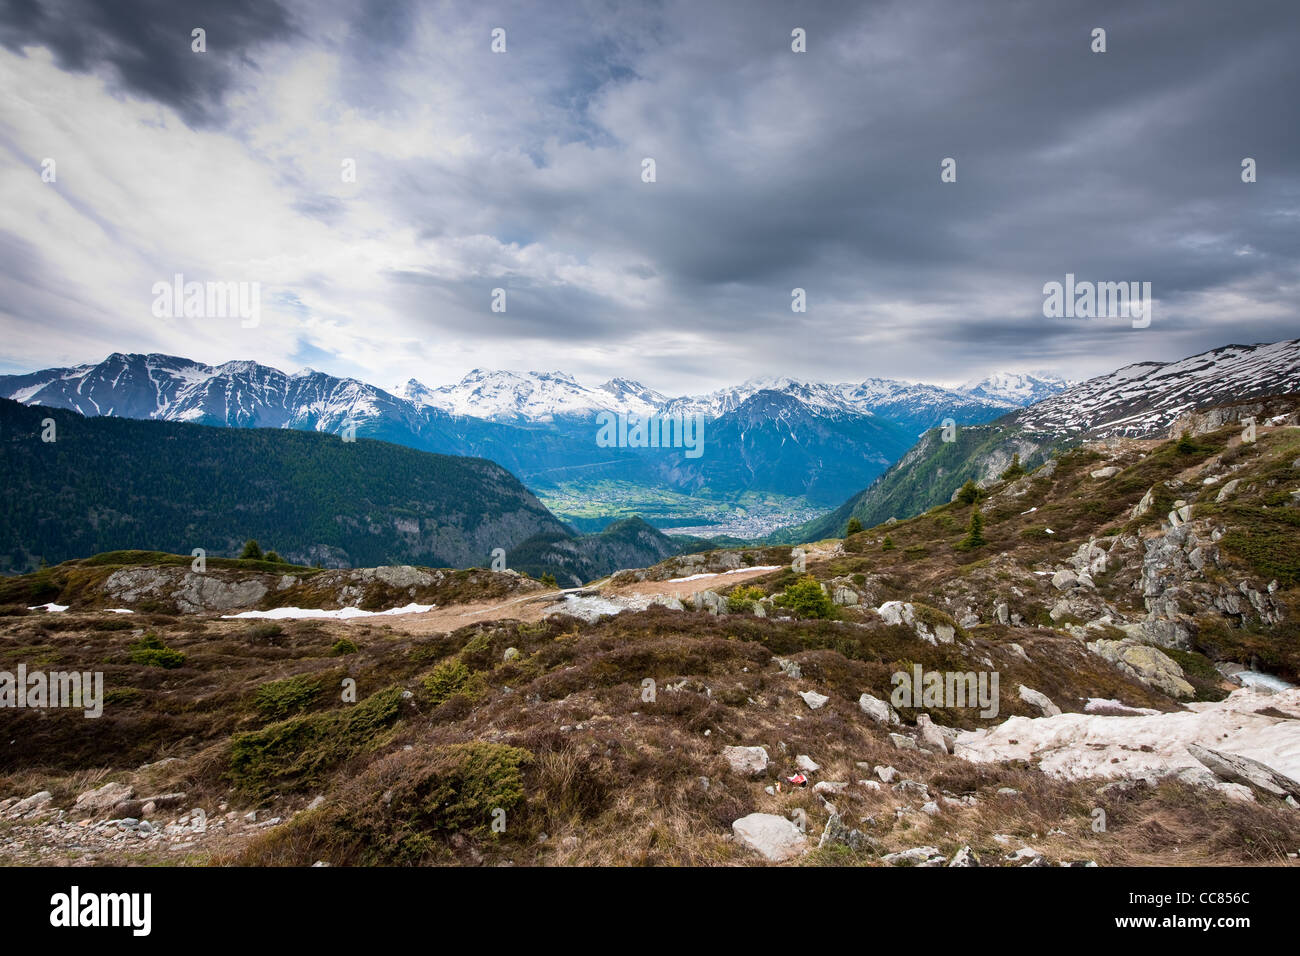 Vue panoramique de Belalp, Valais, Suisse sur une journée grise Banque D'Images